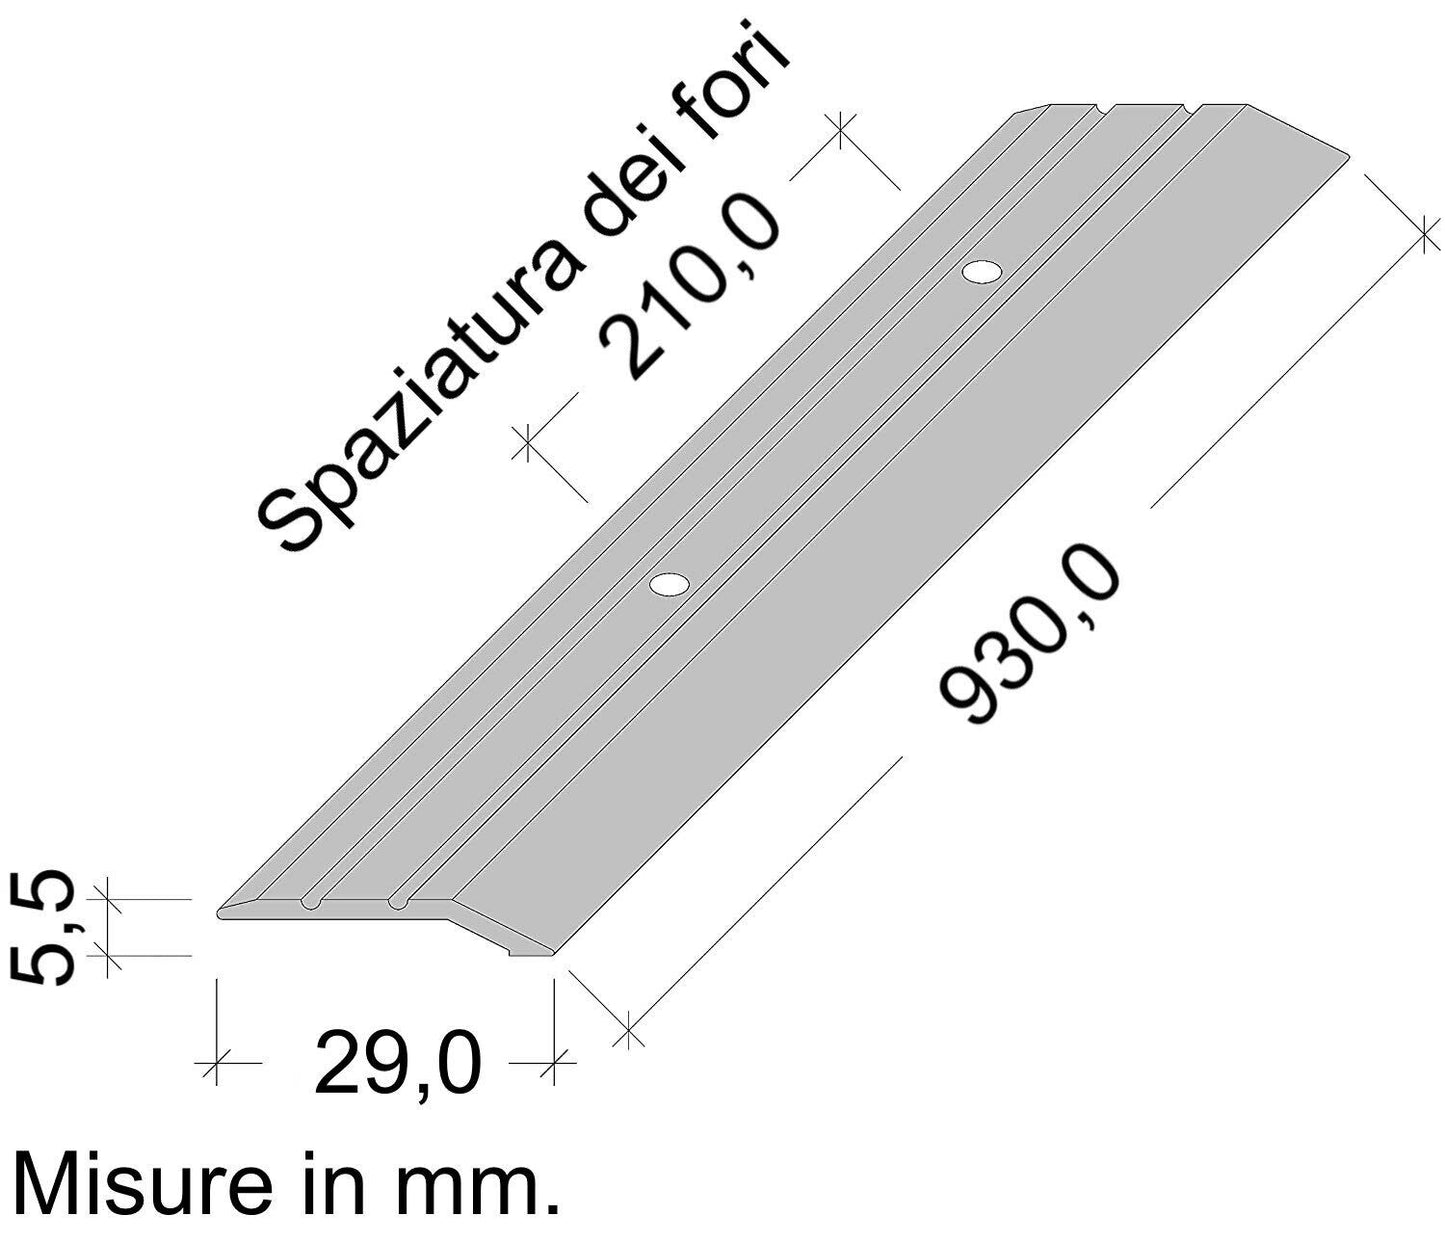 Profilo livello coprisoglia pavimenti alluminio forato inclusi viti e tasselli